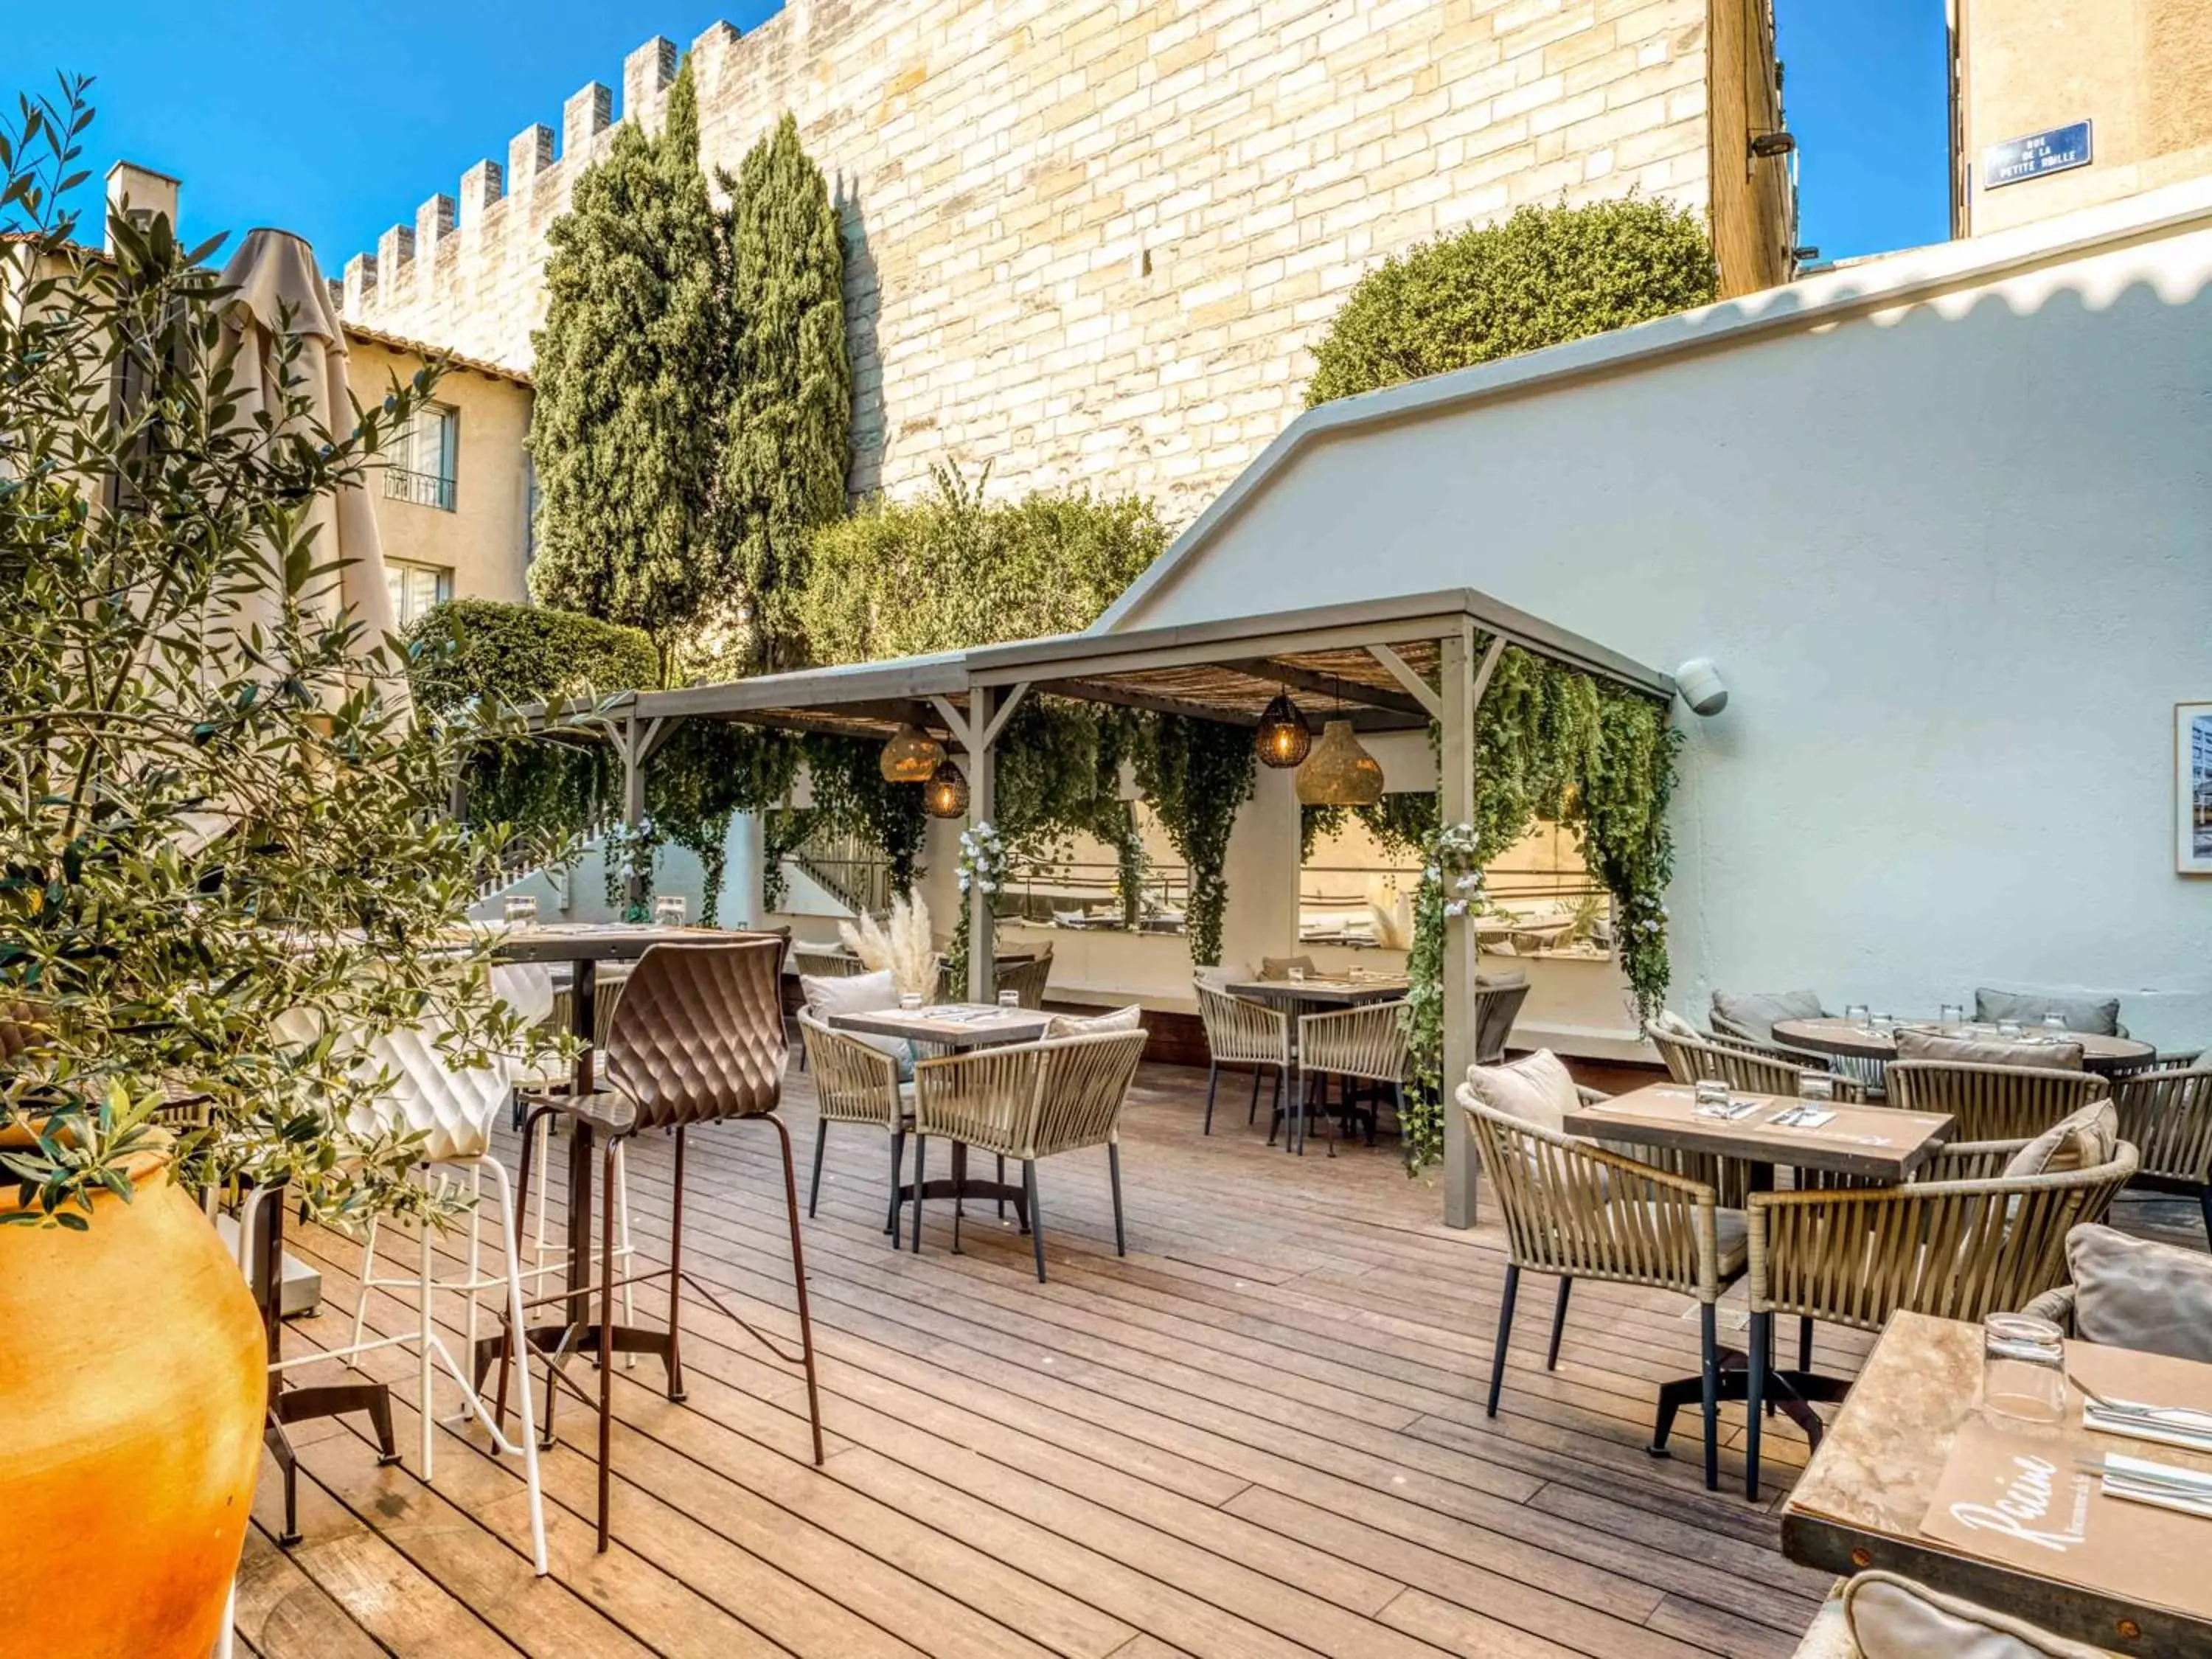 Restaurant/places to eat in Mercure Pont d’Avignon Centre